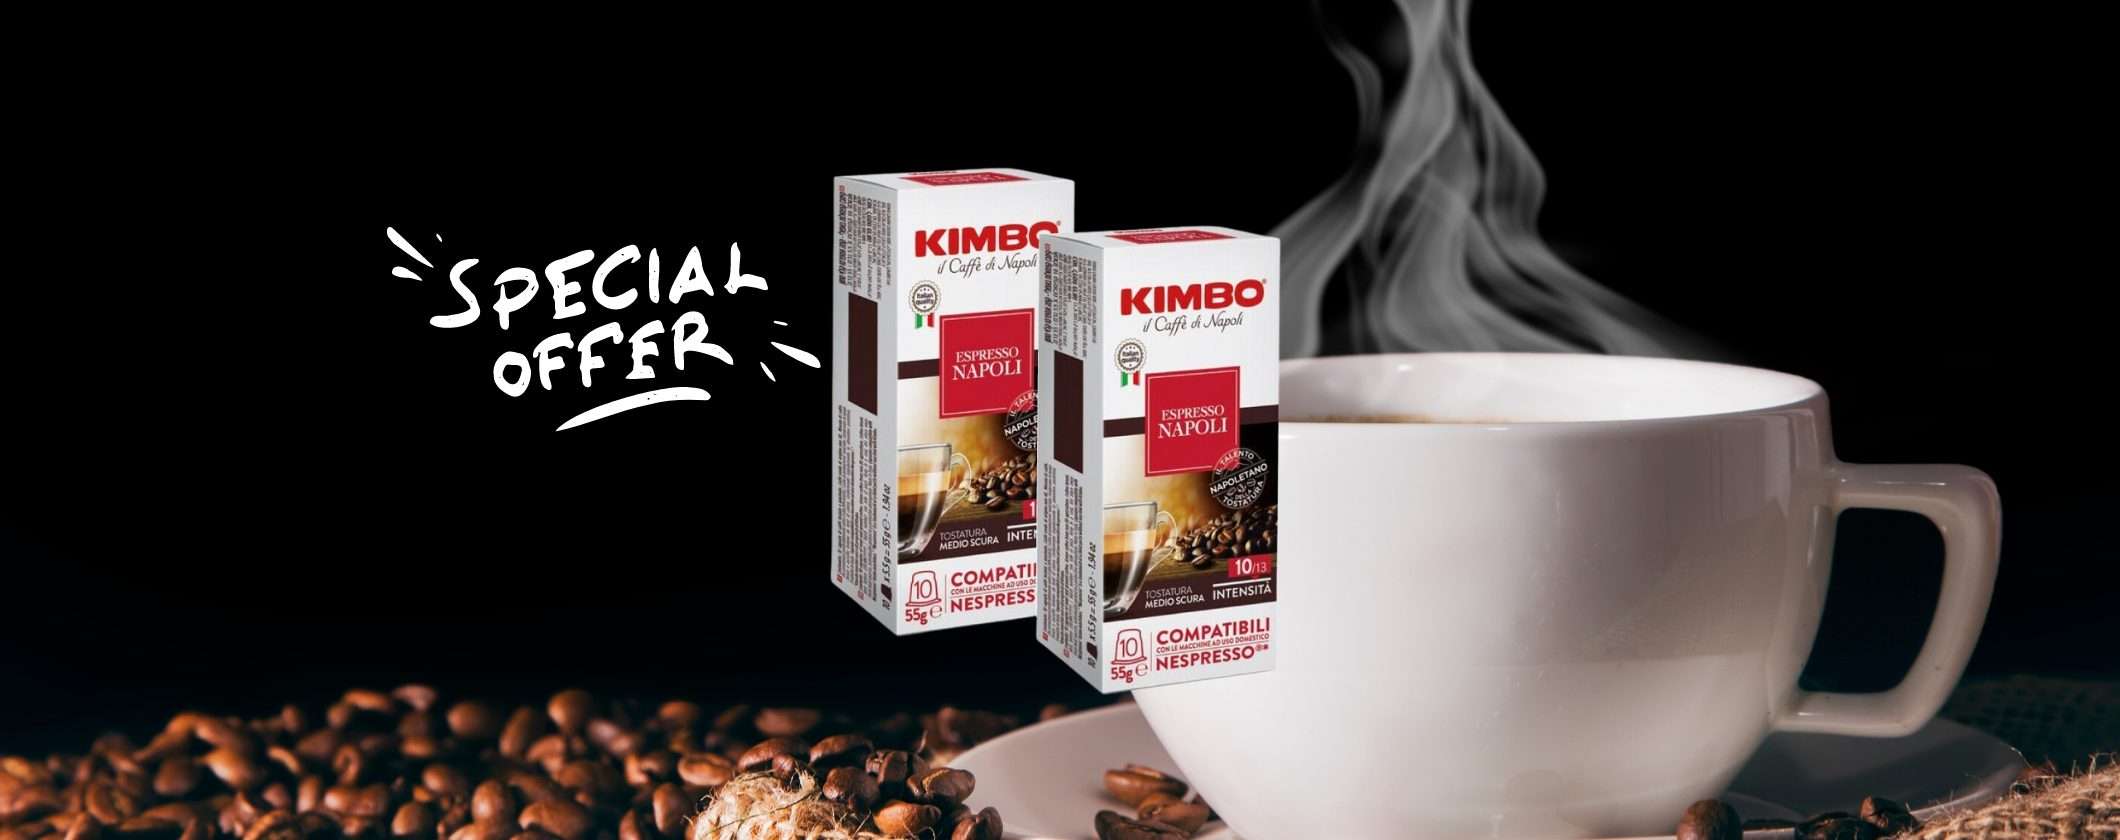 Caffè Kimbo: le capsule per Nespresso a soli 17 centesimi su eBay